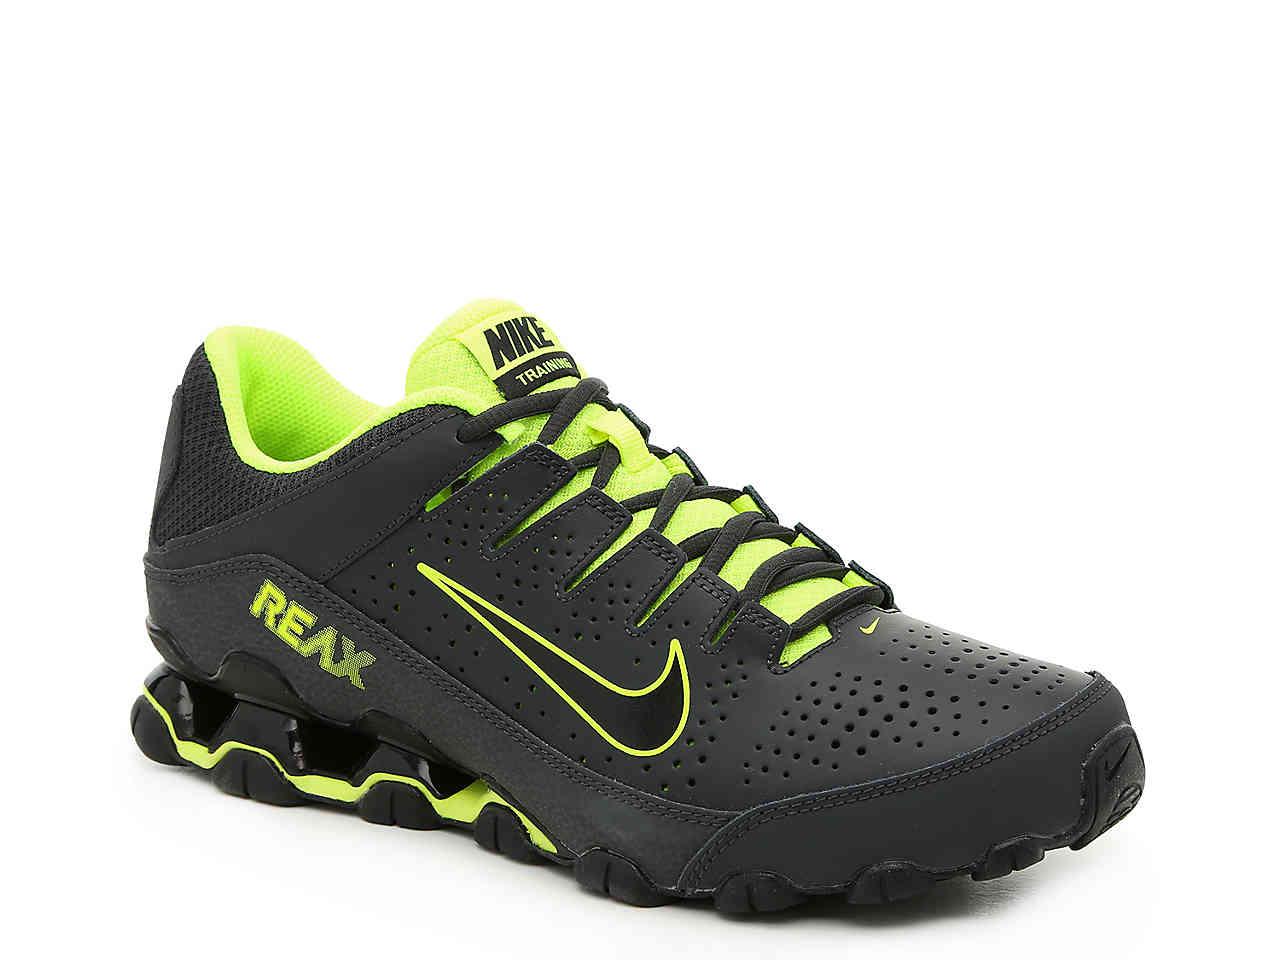 Nike Reax 8 Tr Training Shoe in Black/Neon Green (Green) for Men - Lyst